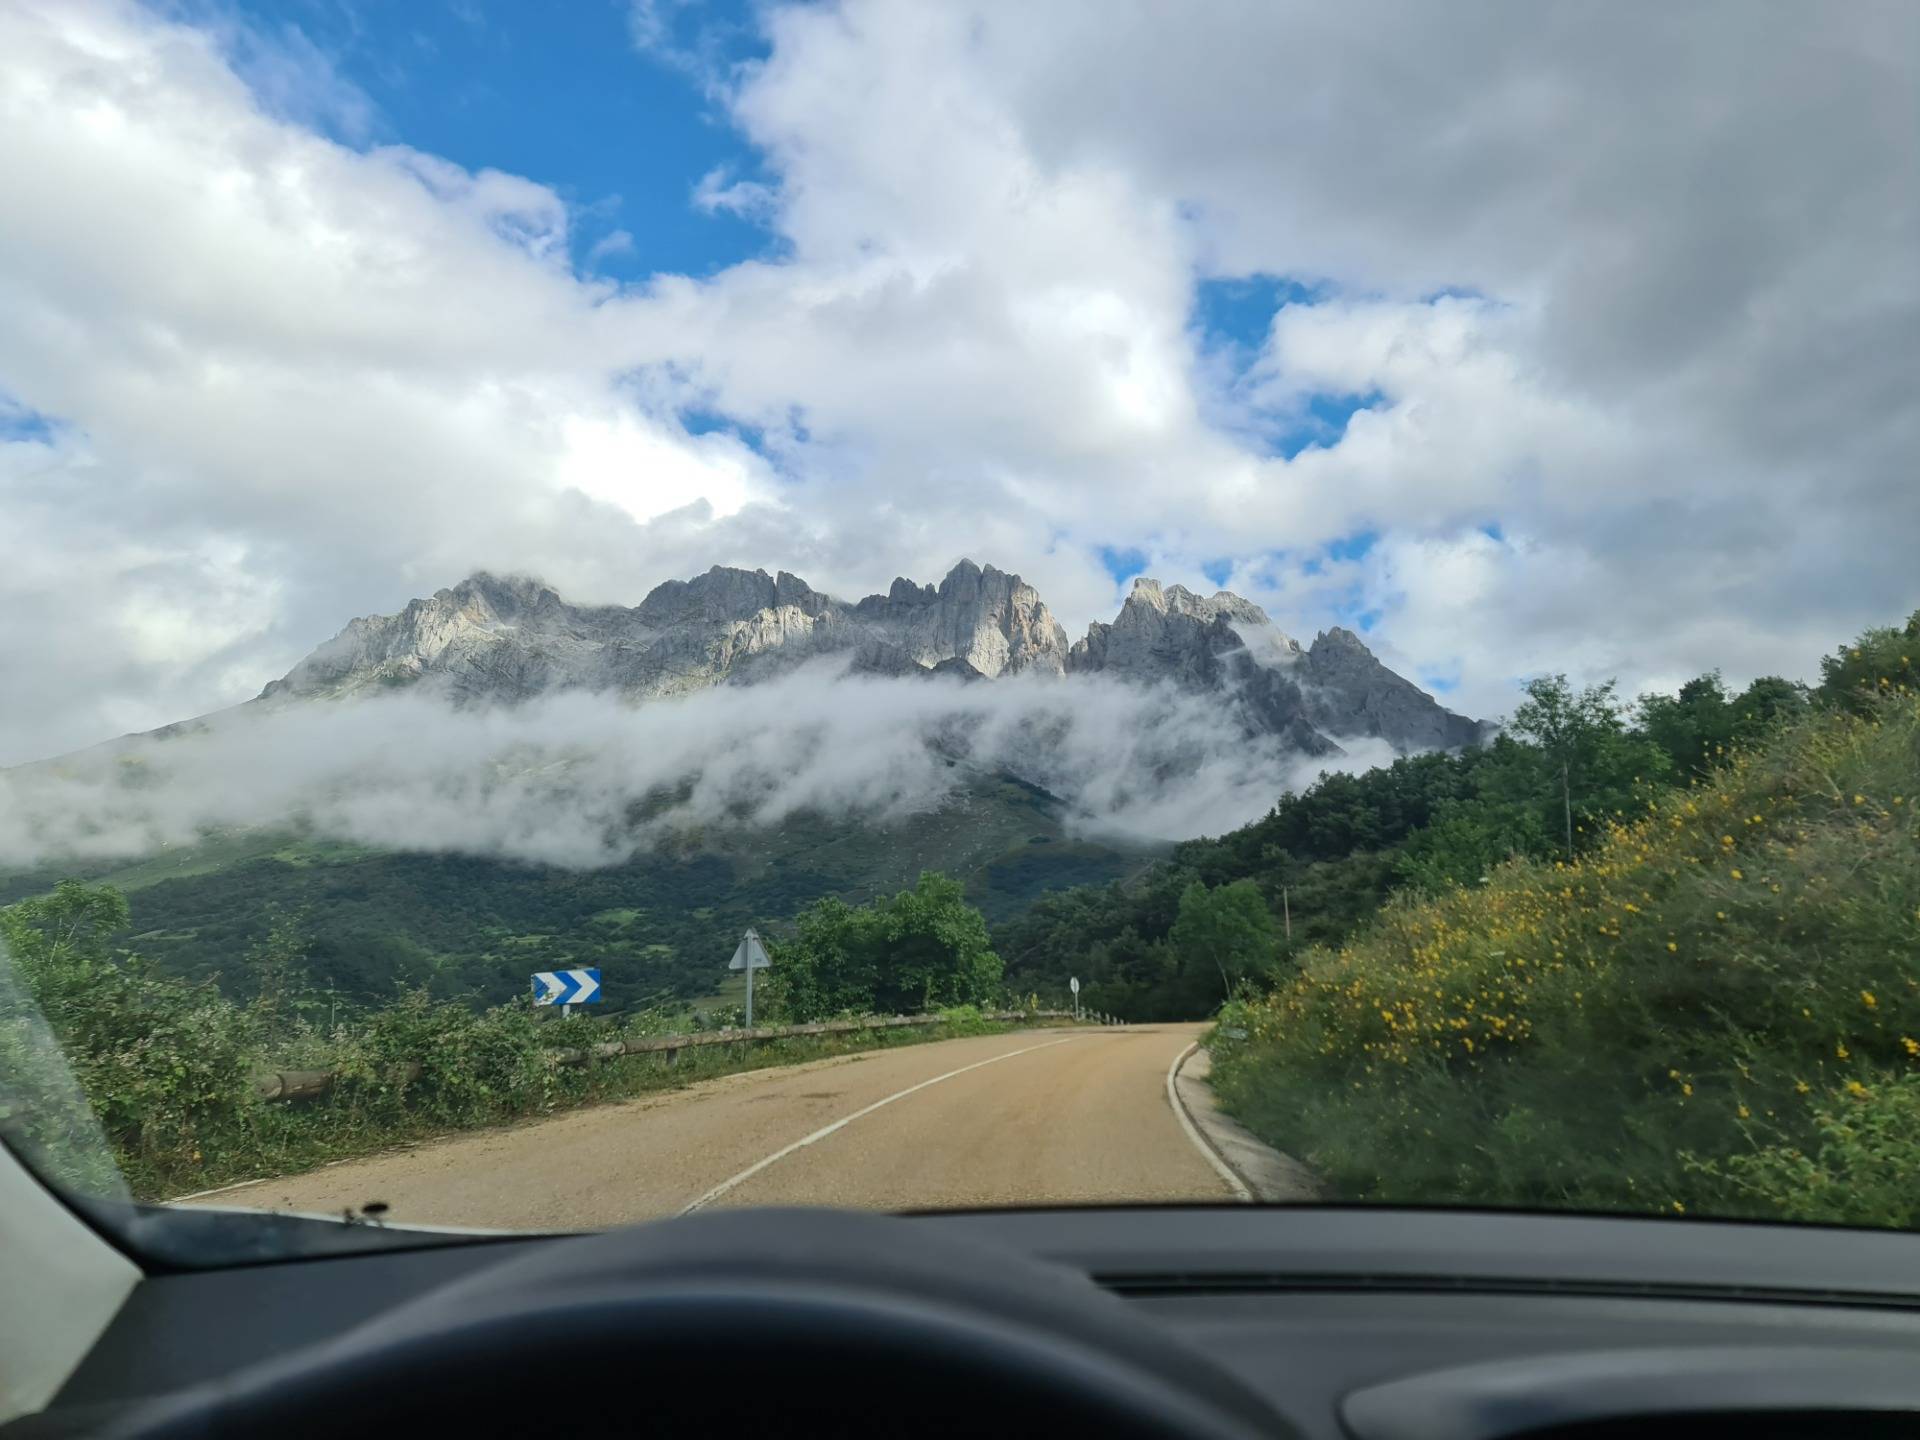 Glimpsing the Picos de Europa from the car, Cantabrian mountain range.